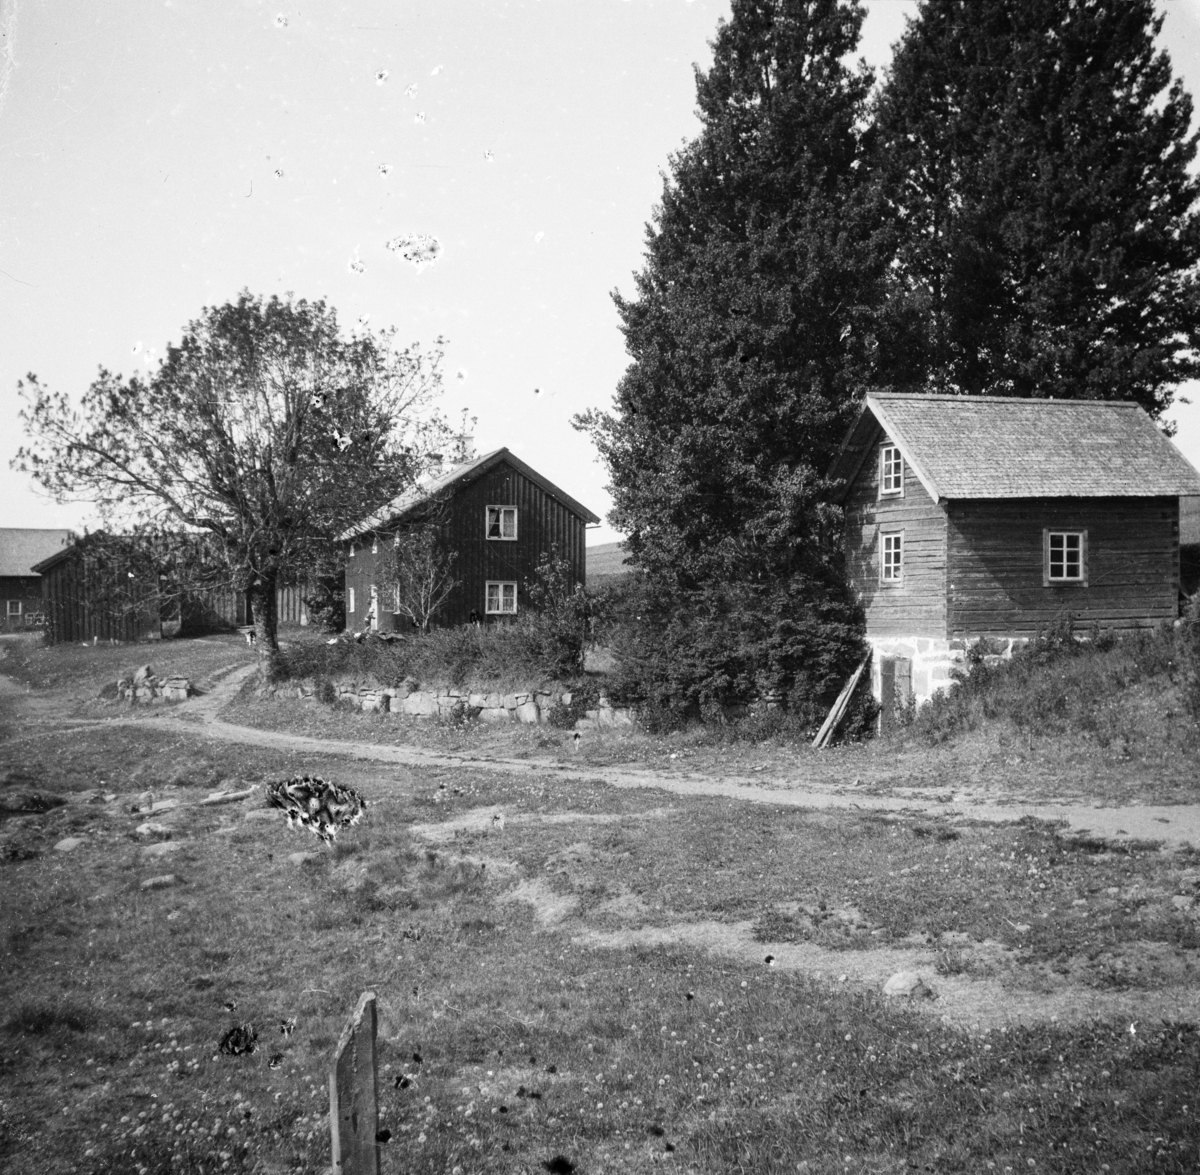 Stommen i Gullereds by, Västergötland
Exteriör

Svensk arkitektur: kyrkor, herrgårdar med mera fotograferade av Arkitekturminnesföreningen 1908-23.